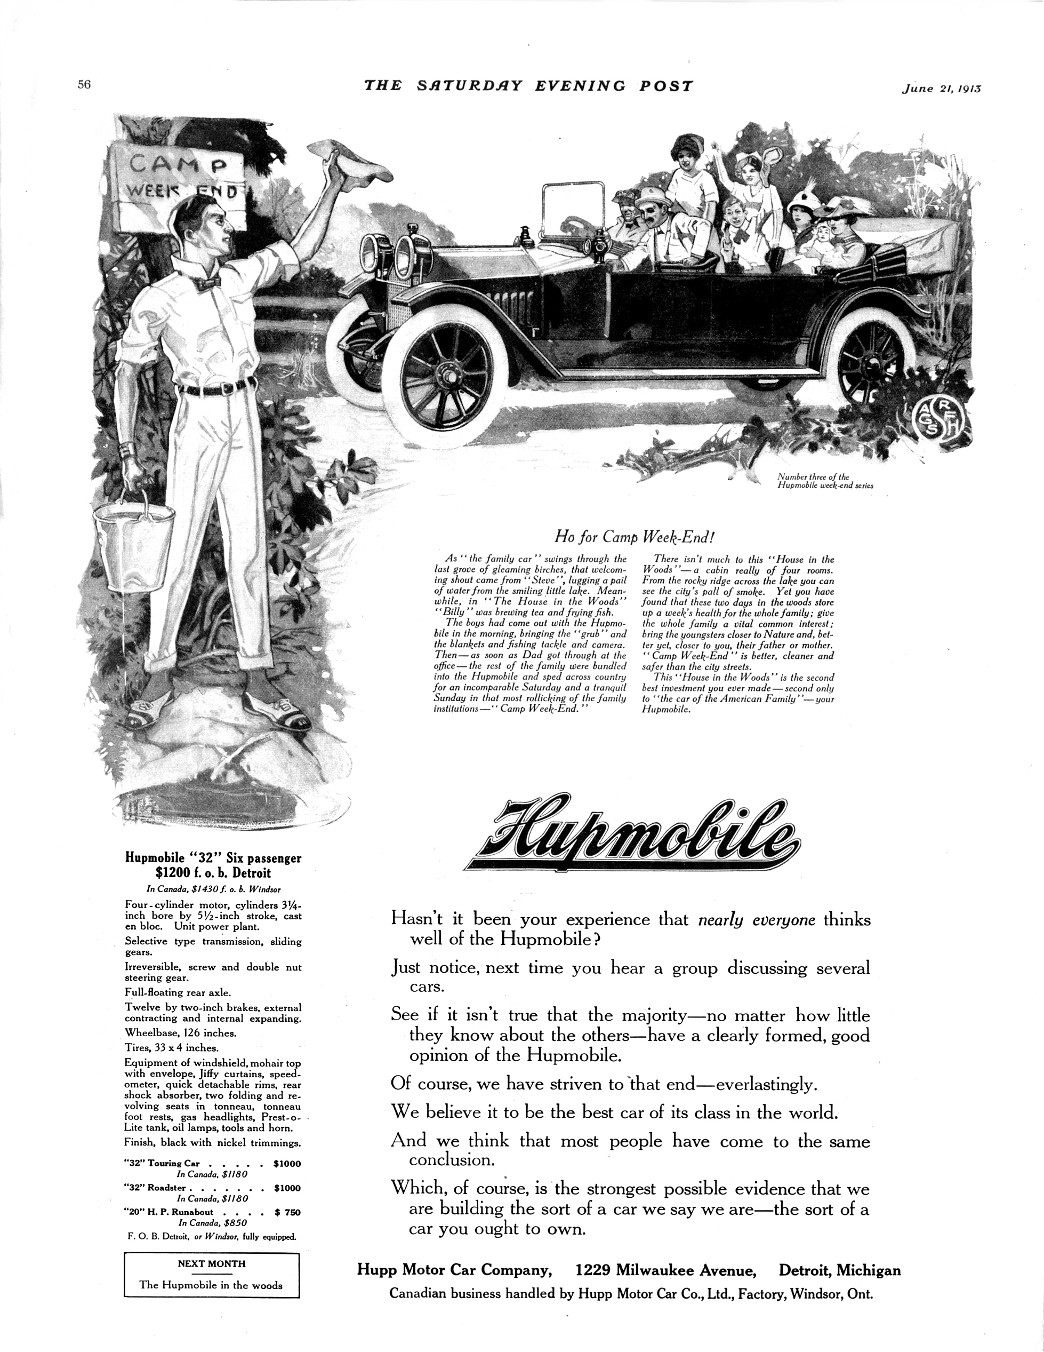 1913 Hupmobile Auto Advertising